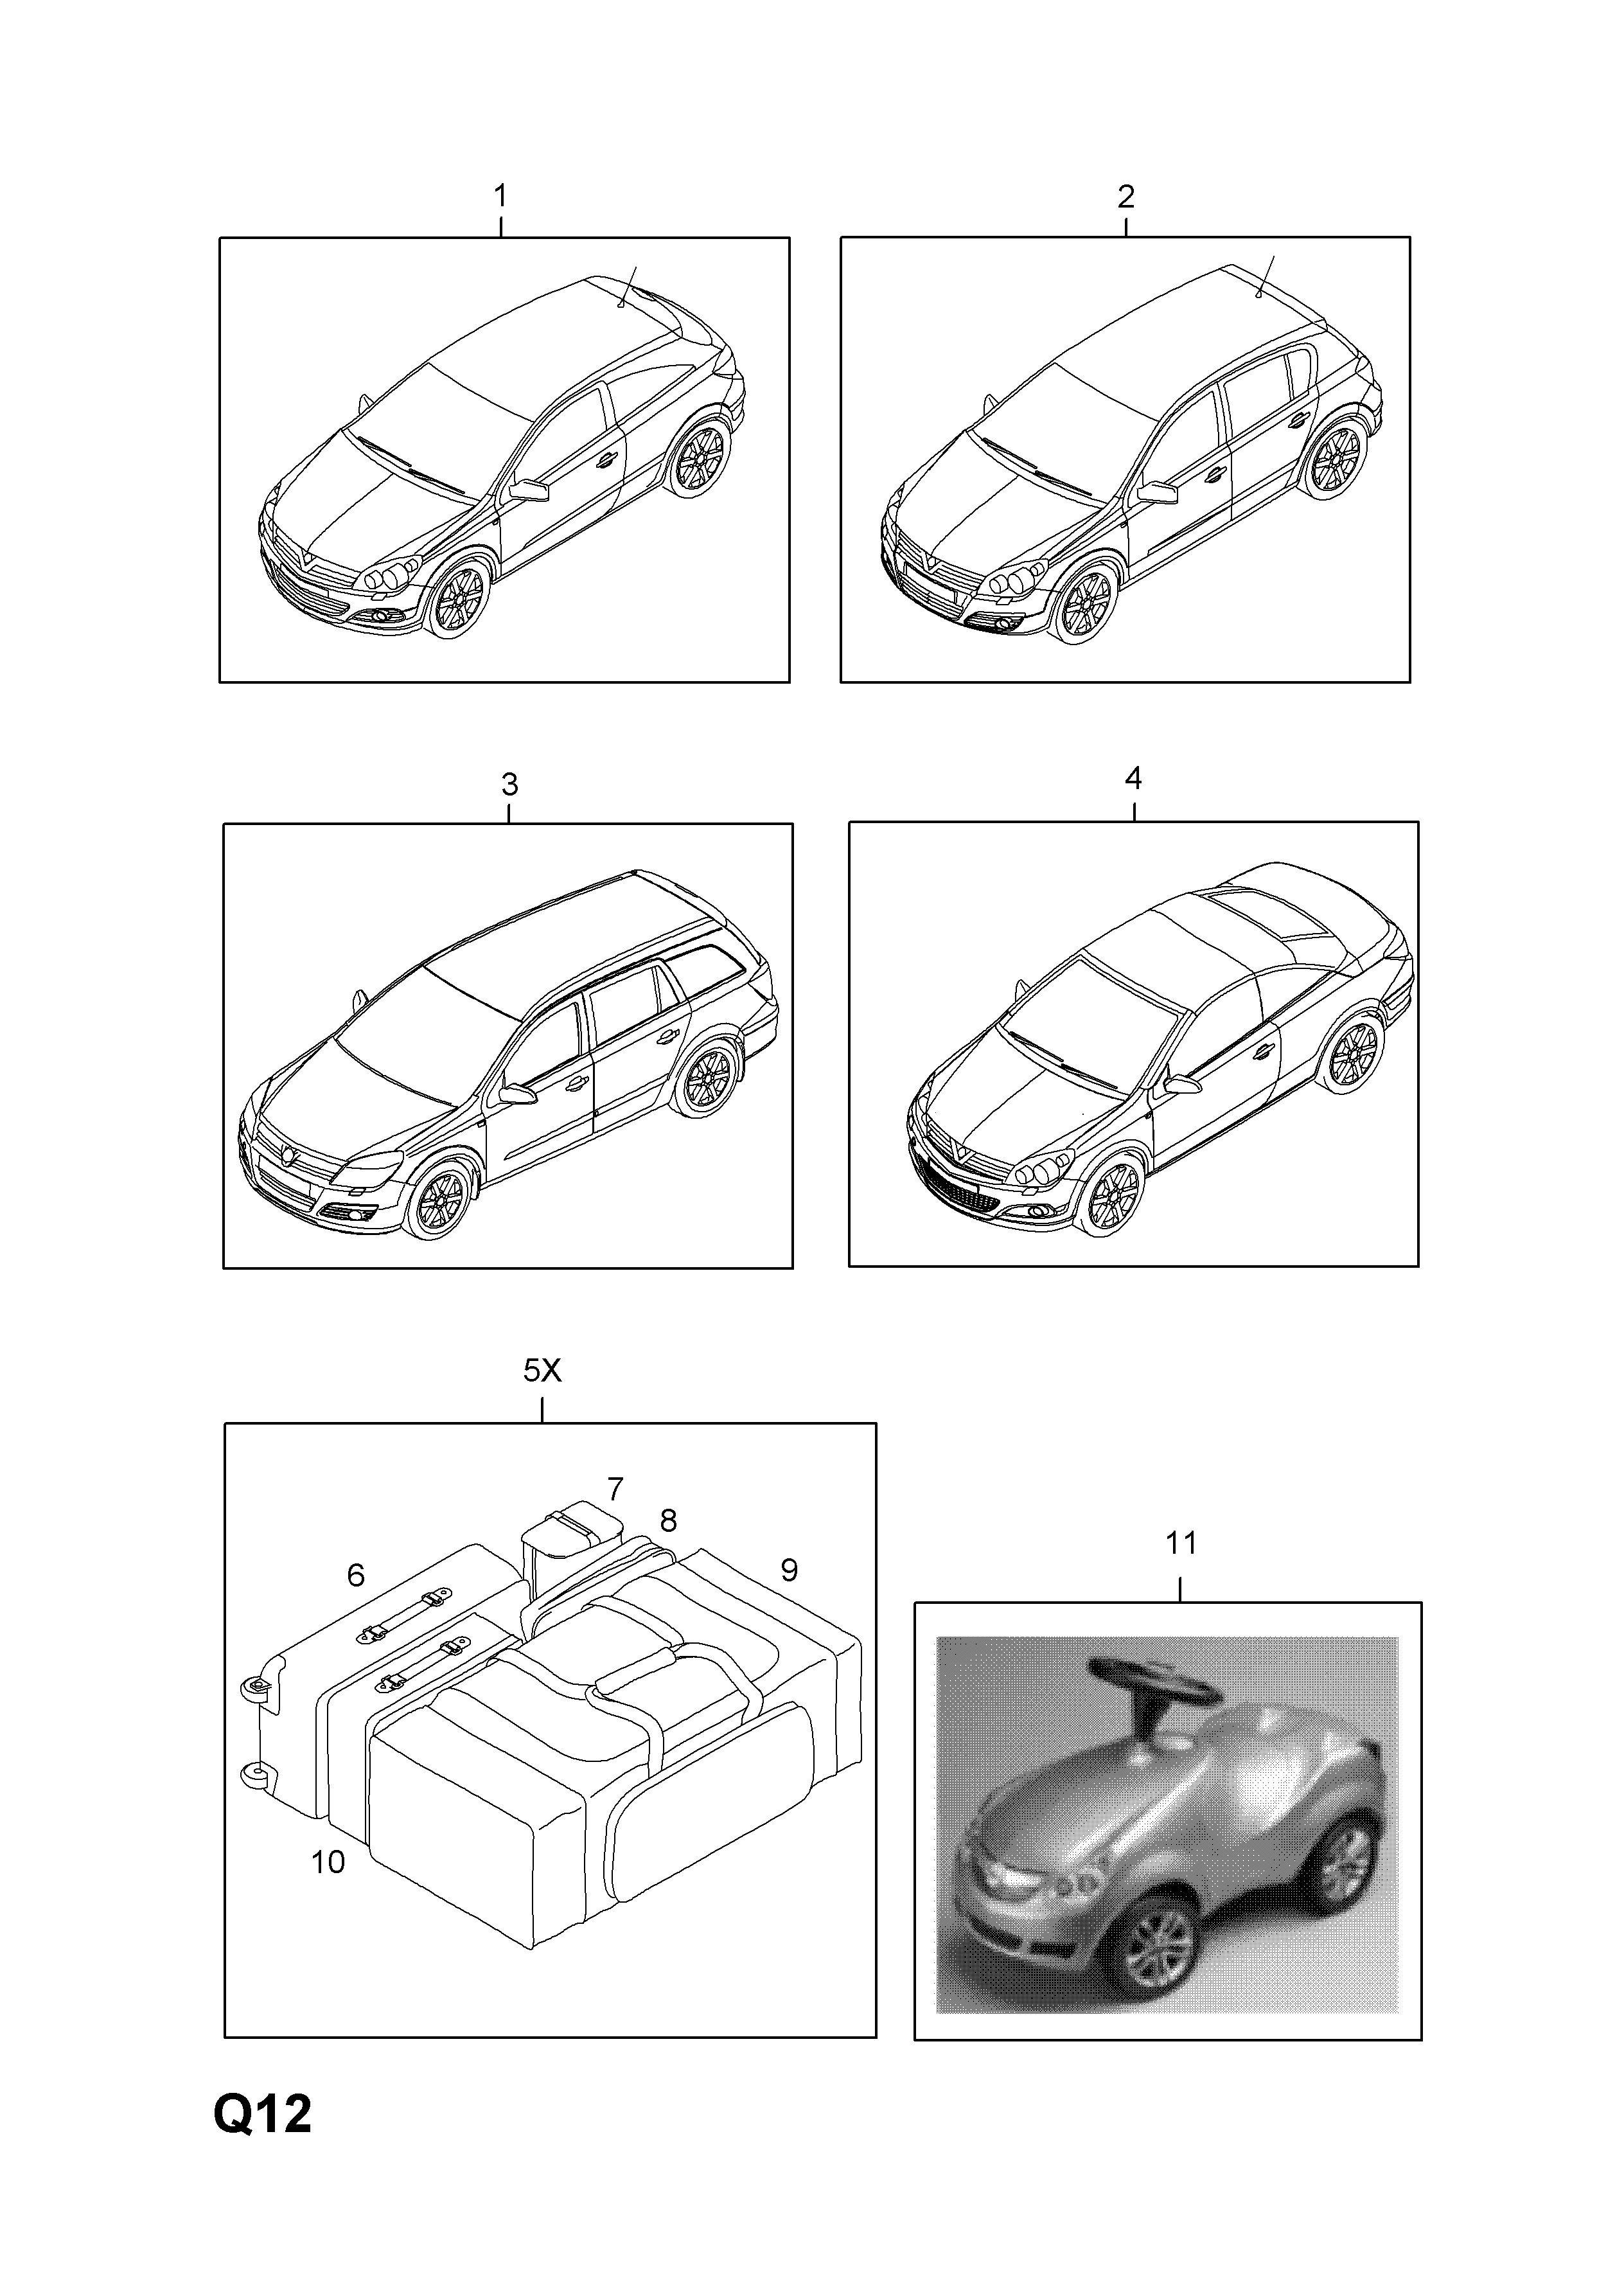 MODEL CARS <small><i>[LHD]</i></small>